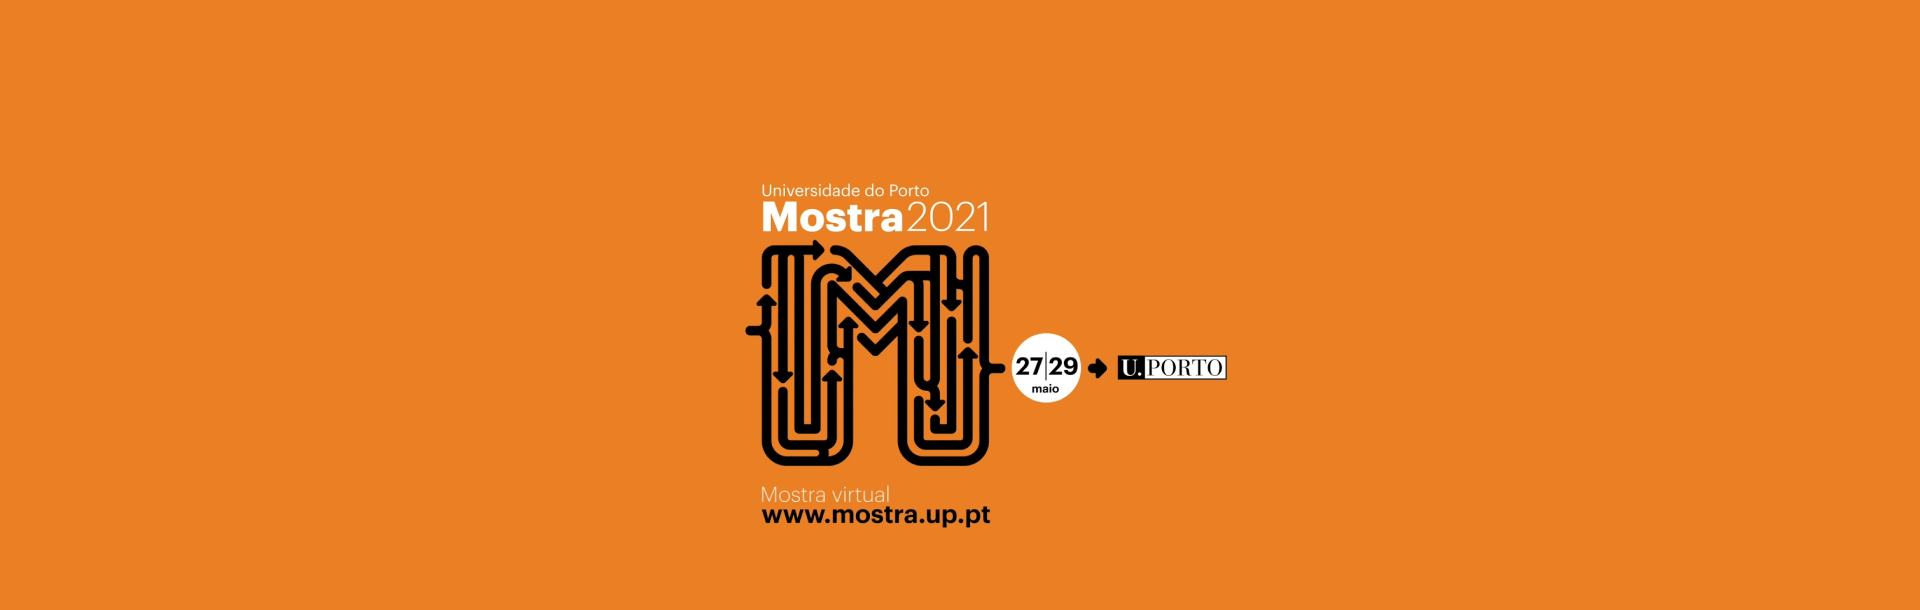 Universidade do Porto Mostra UP 2021